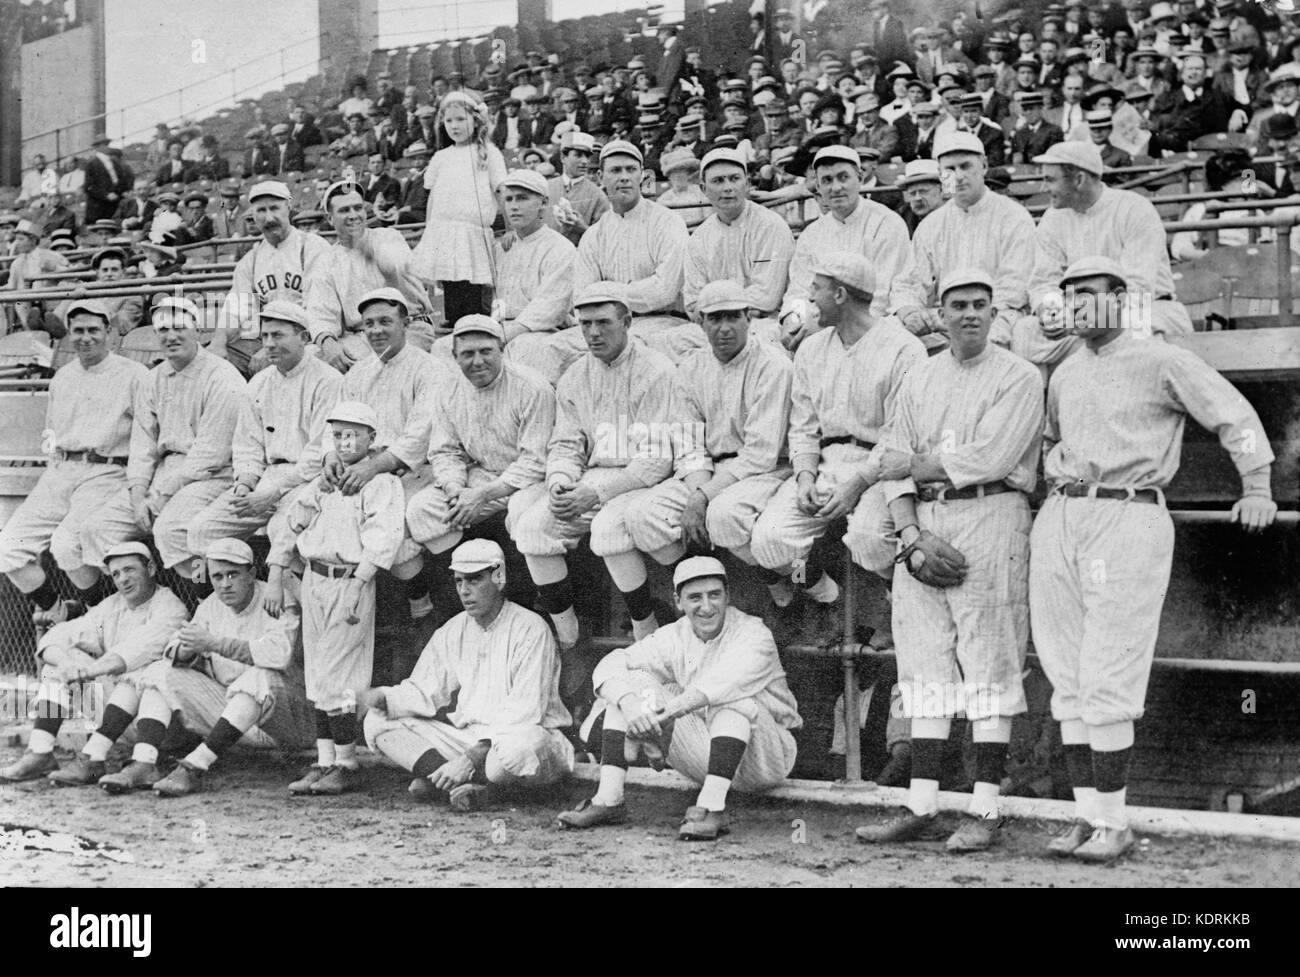 Boston Red Sox foto del equipo en la Serie Mundial de 1912 Foto de stock